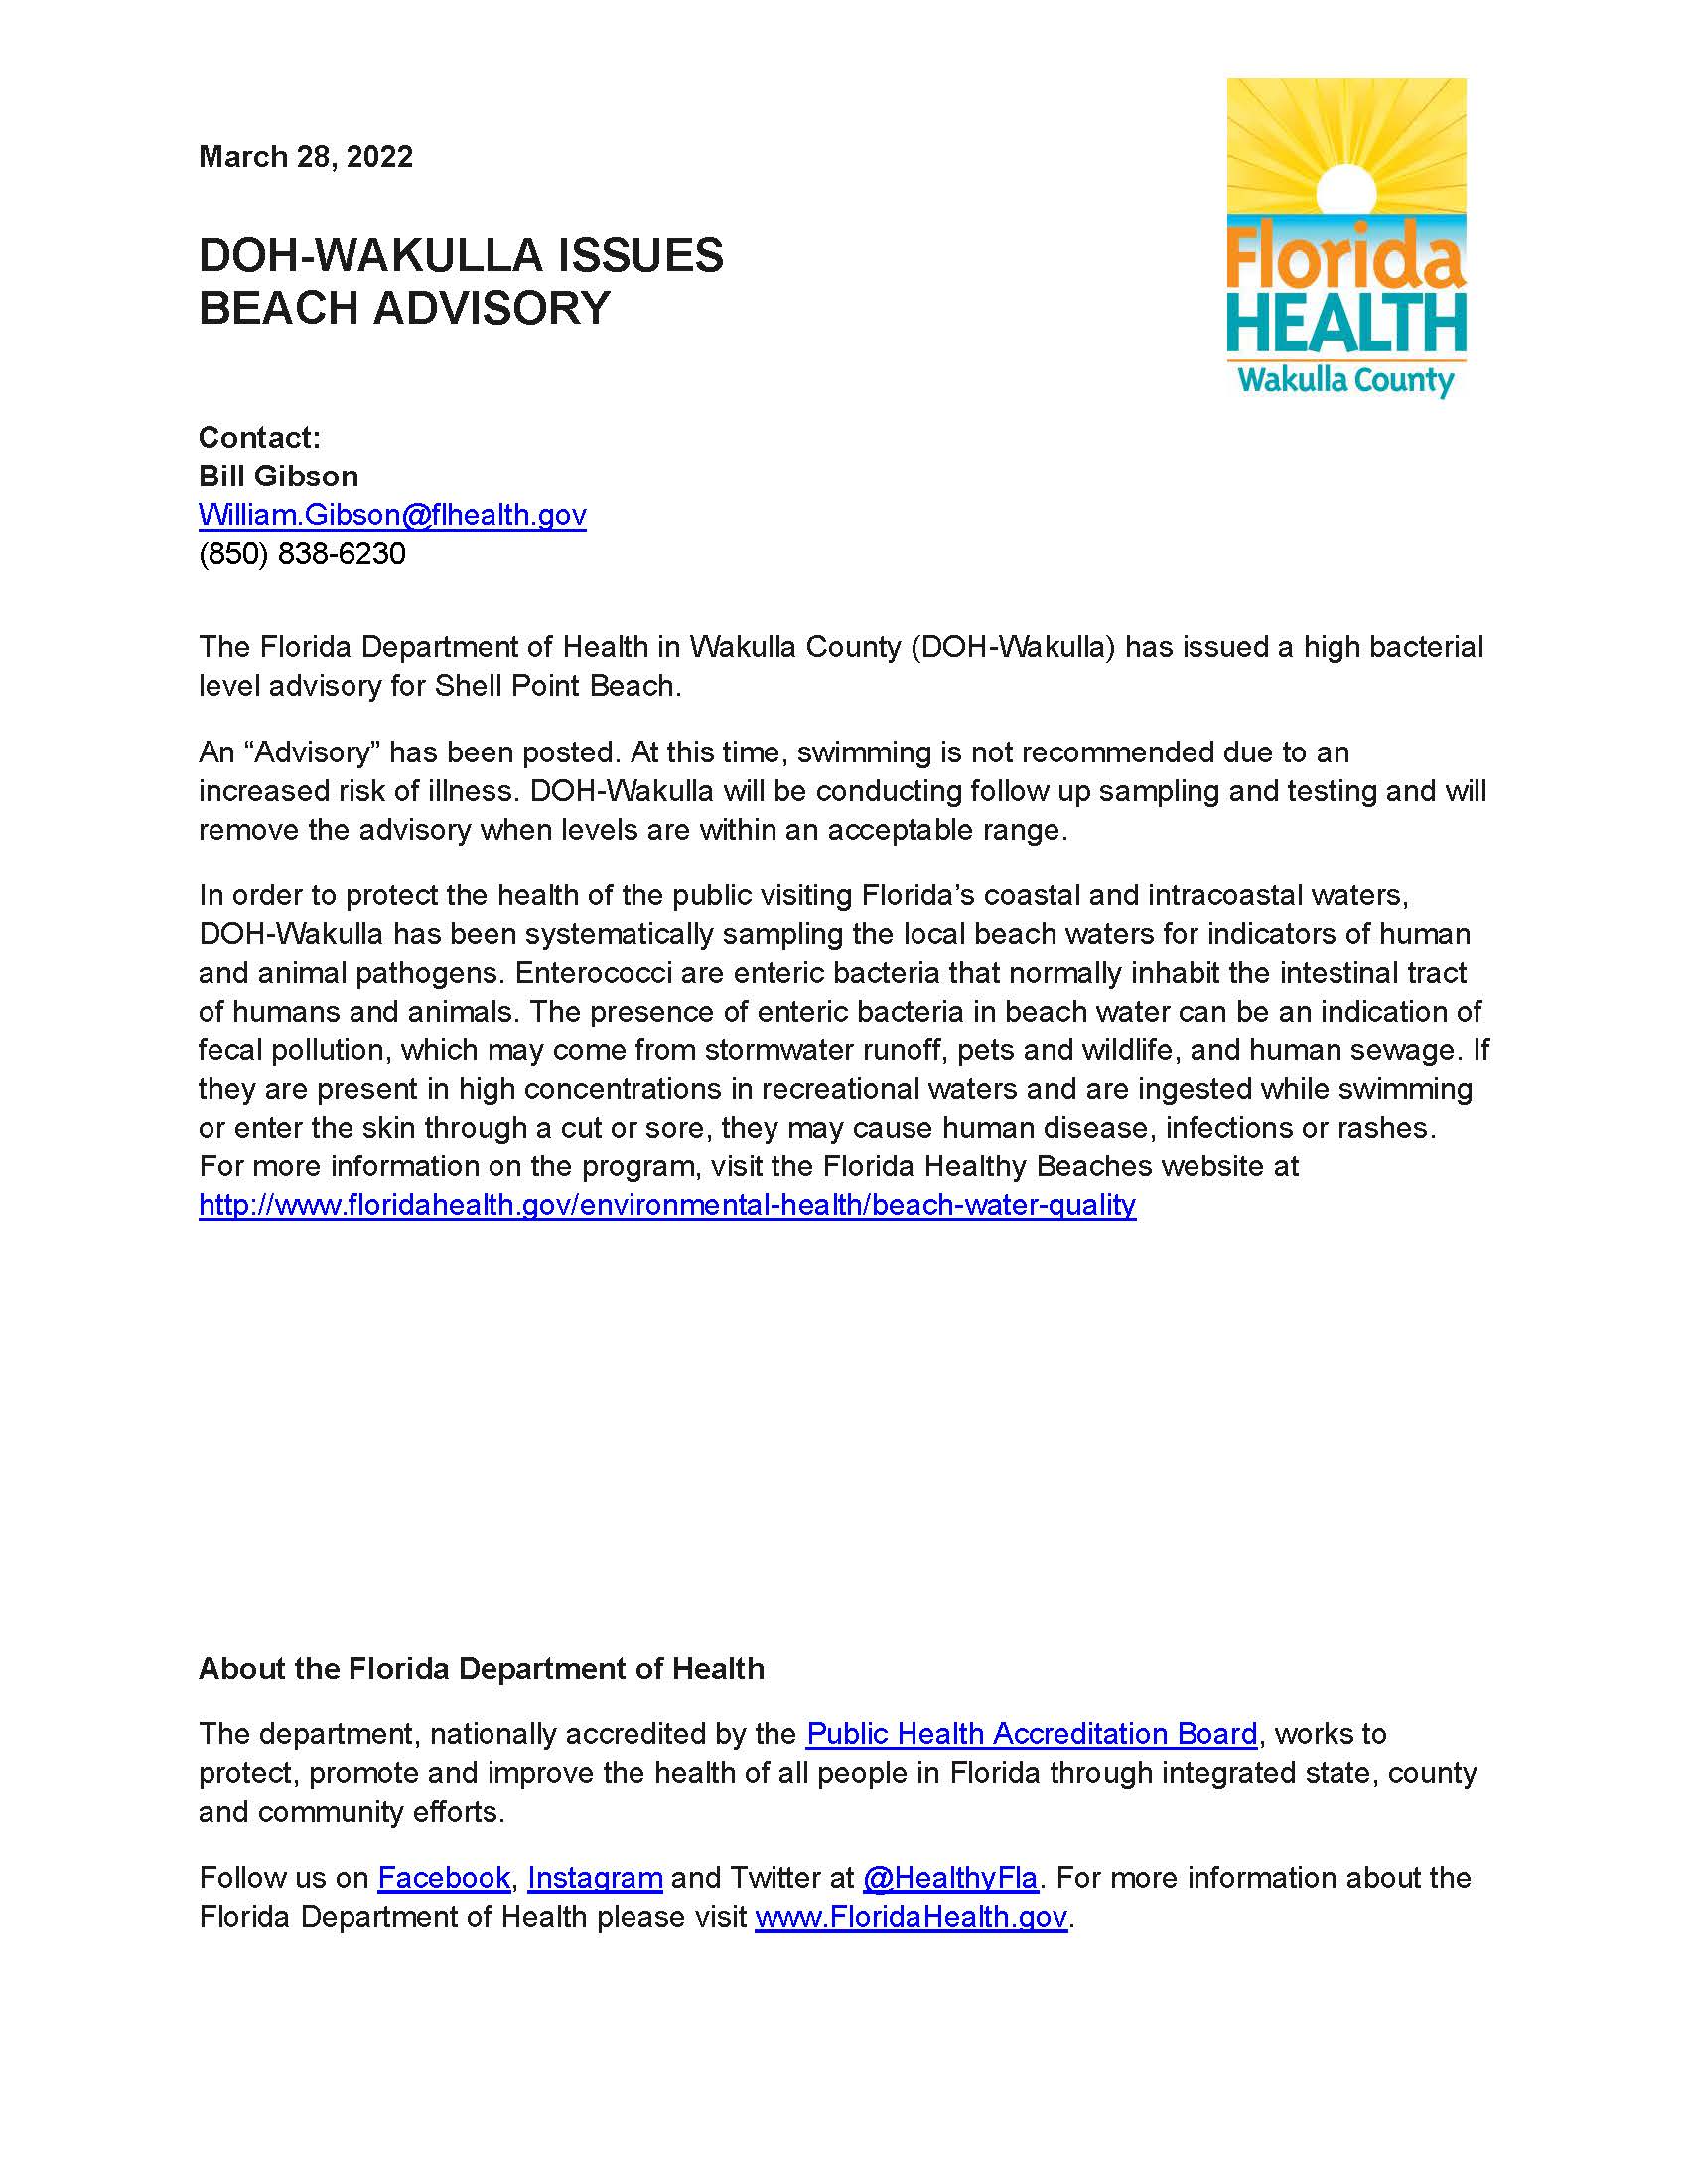 Wakulla Beach Advisory - 3.28.22 (003)